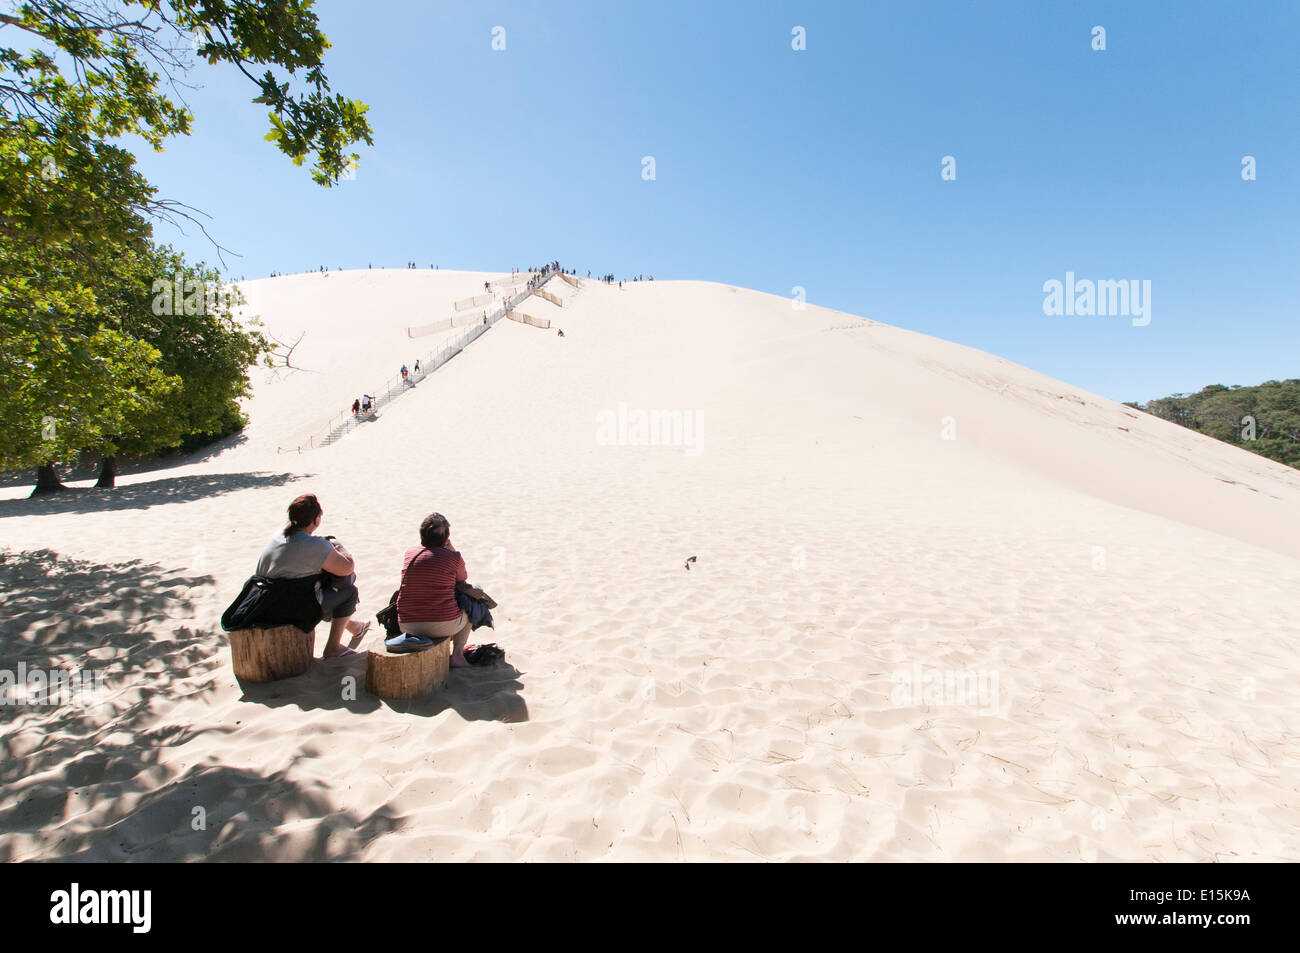 France, Gironde, bassin d'Arcachon (Arcachon). Deux femmes adultes regardent les visiteurs de monter les marches jusqu'au sommet de la dune du Pyla. Banque D'Images